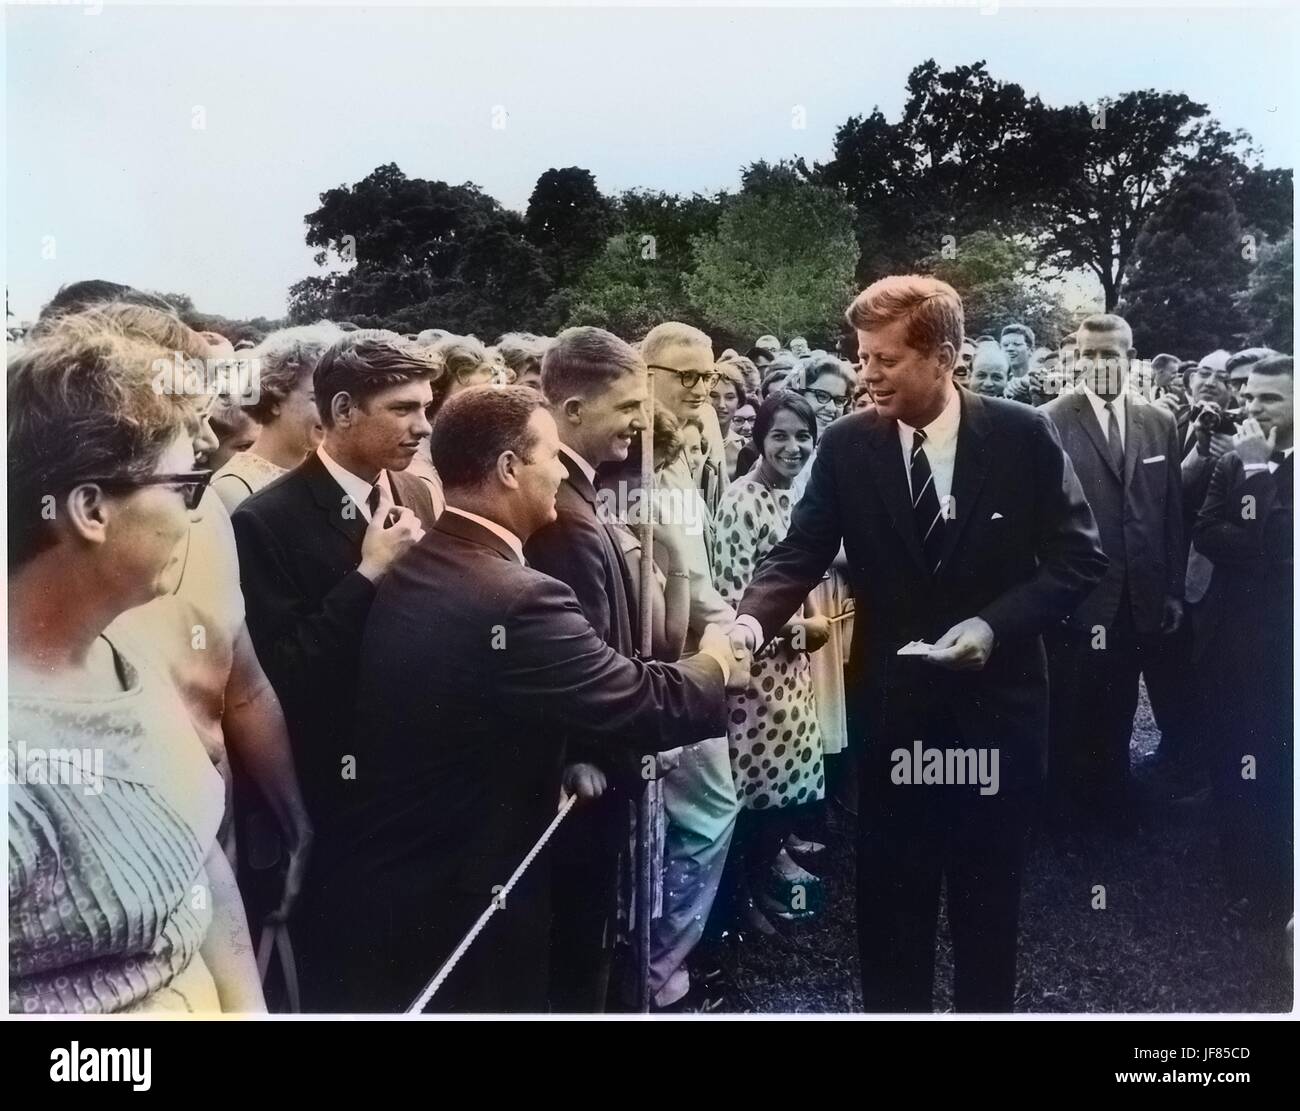 Le président John F. Kennedy accueille les bénévoles avec le corps de la paix sur la pelouse Sud de la Maison Blanche, Washington, D.C, 9 août 1962. L'image de courtoisie des Archives nationales. Remarque : l'image a été colorisée numériquement à l'aide d'un processus moderne. Les couleurs peuvent ne pas être exacts à l'autre. Banque D'Images